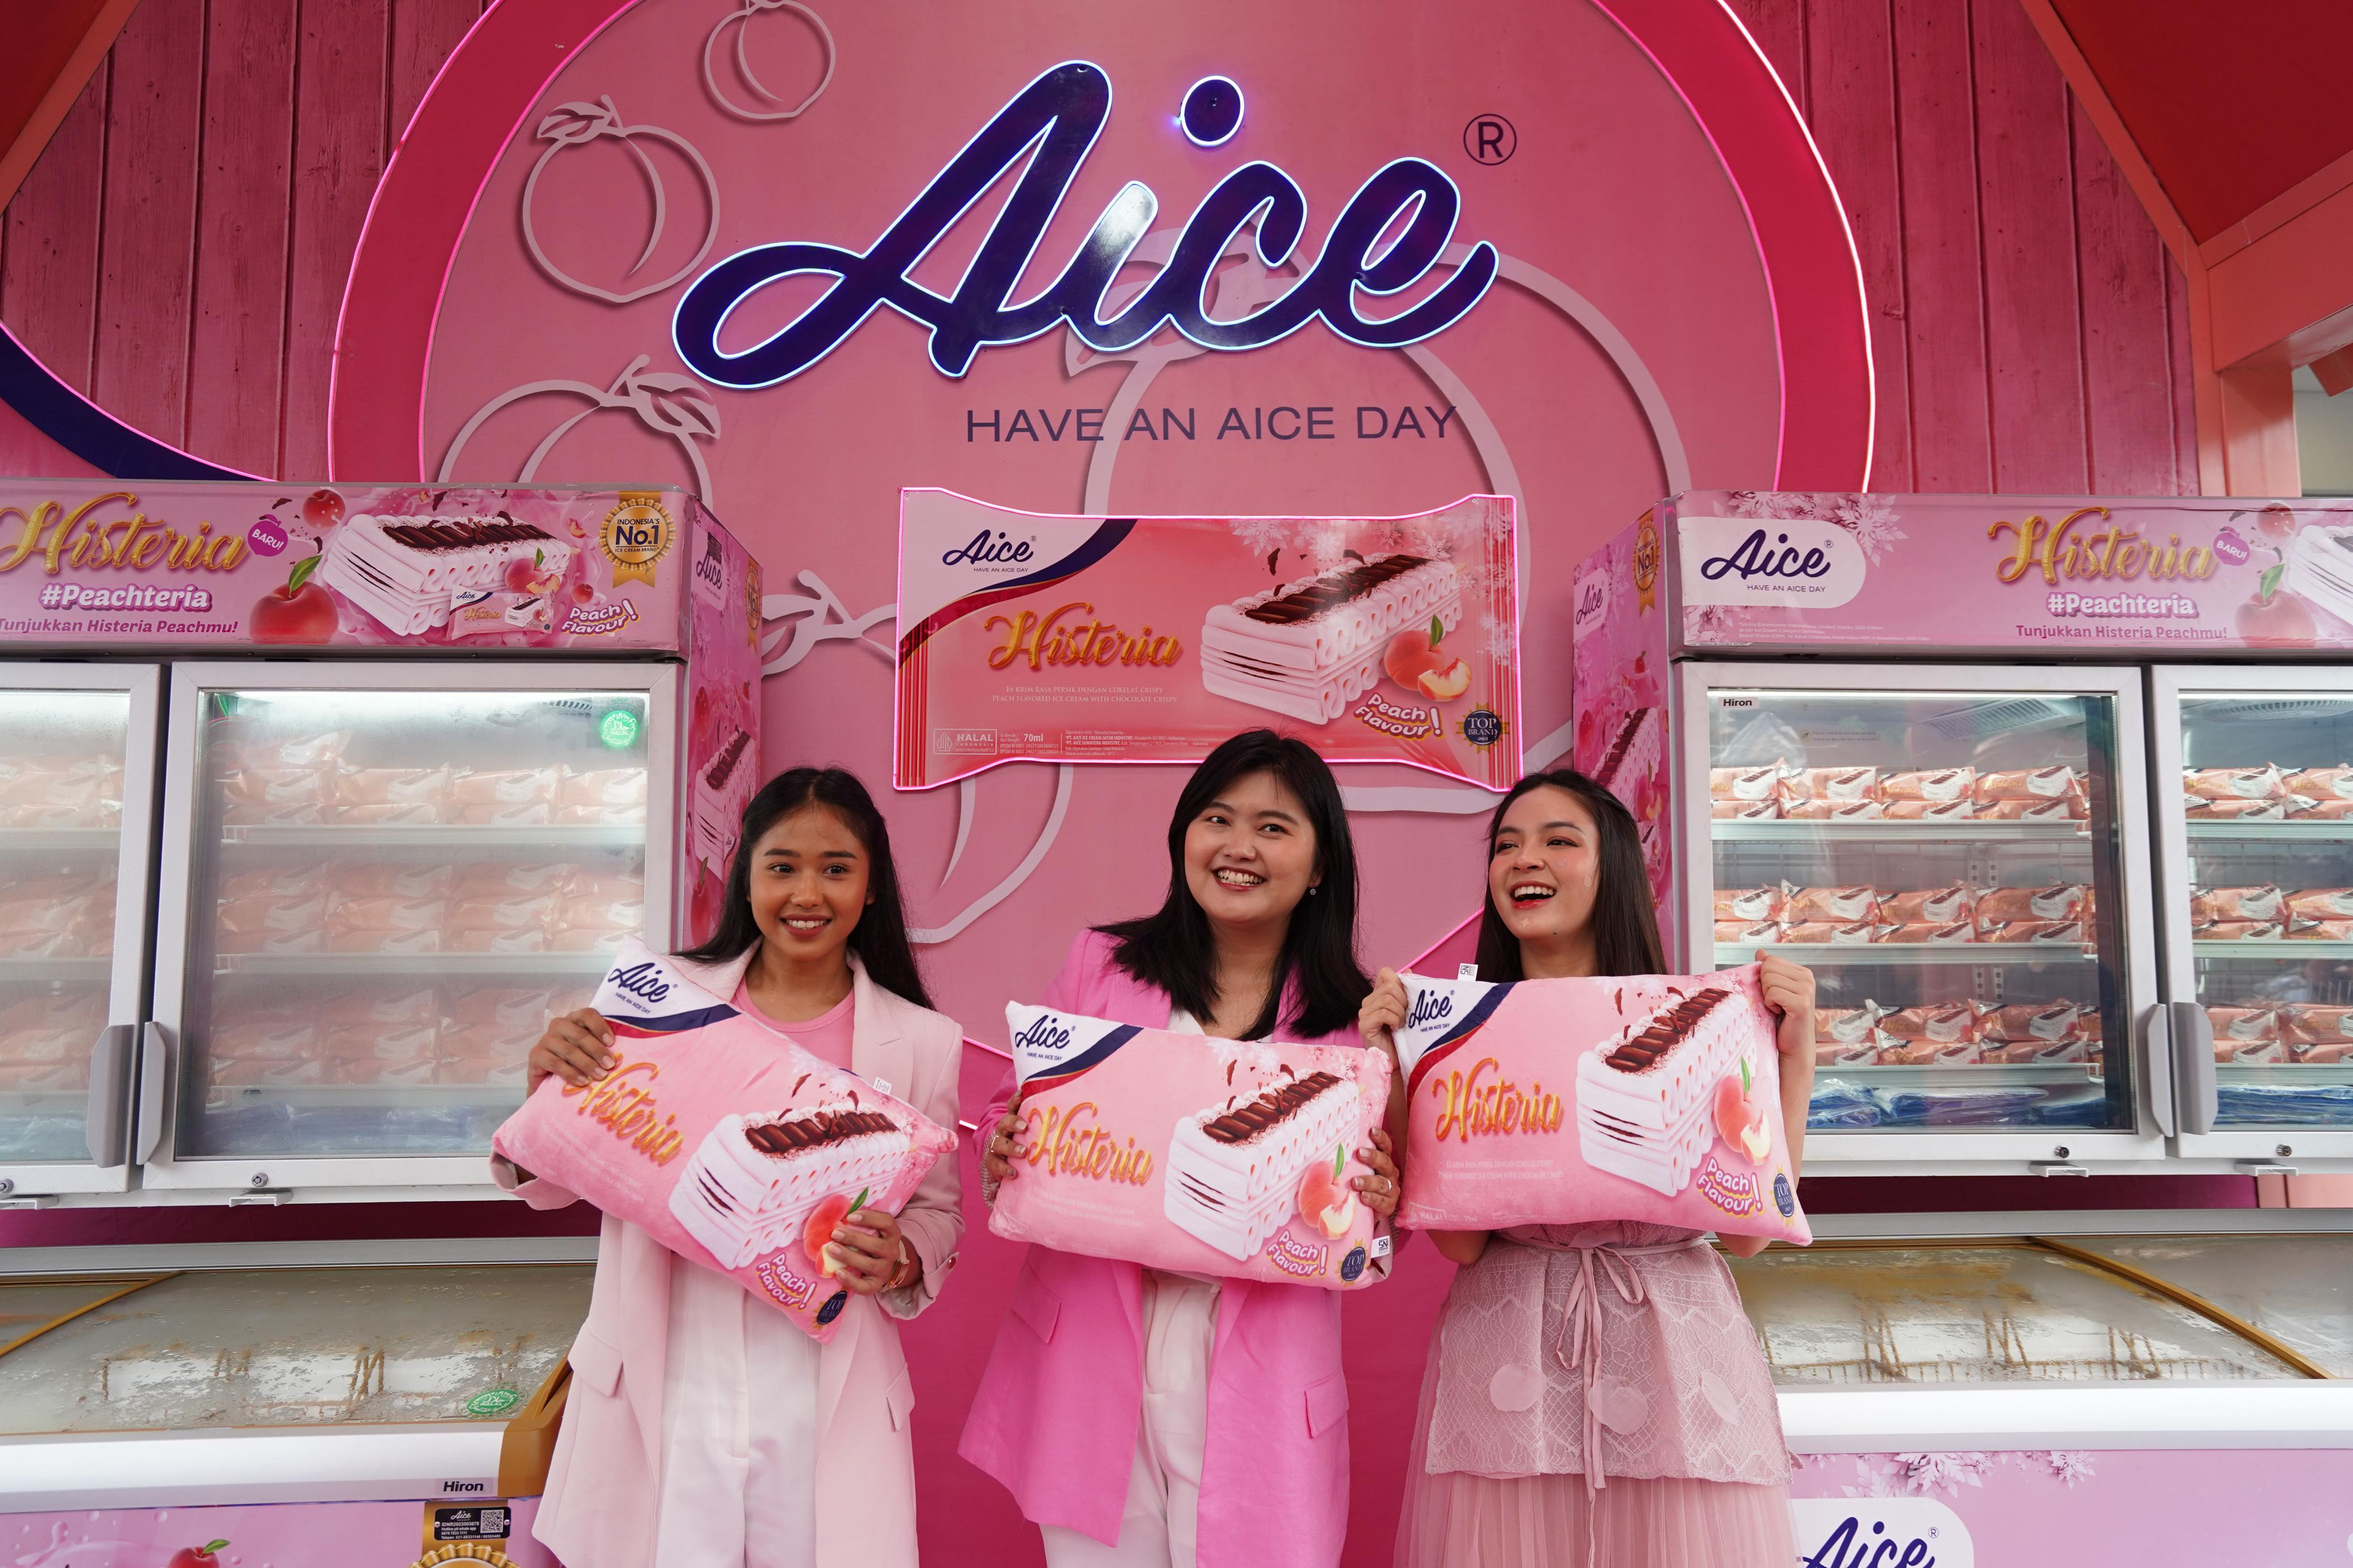 Aice Luncurkan Histeria Peach, Hadirkan Trend Rasa Kekinian Untuk Rayakan Pencapaian Perempuan